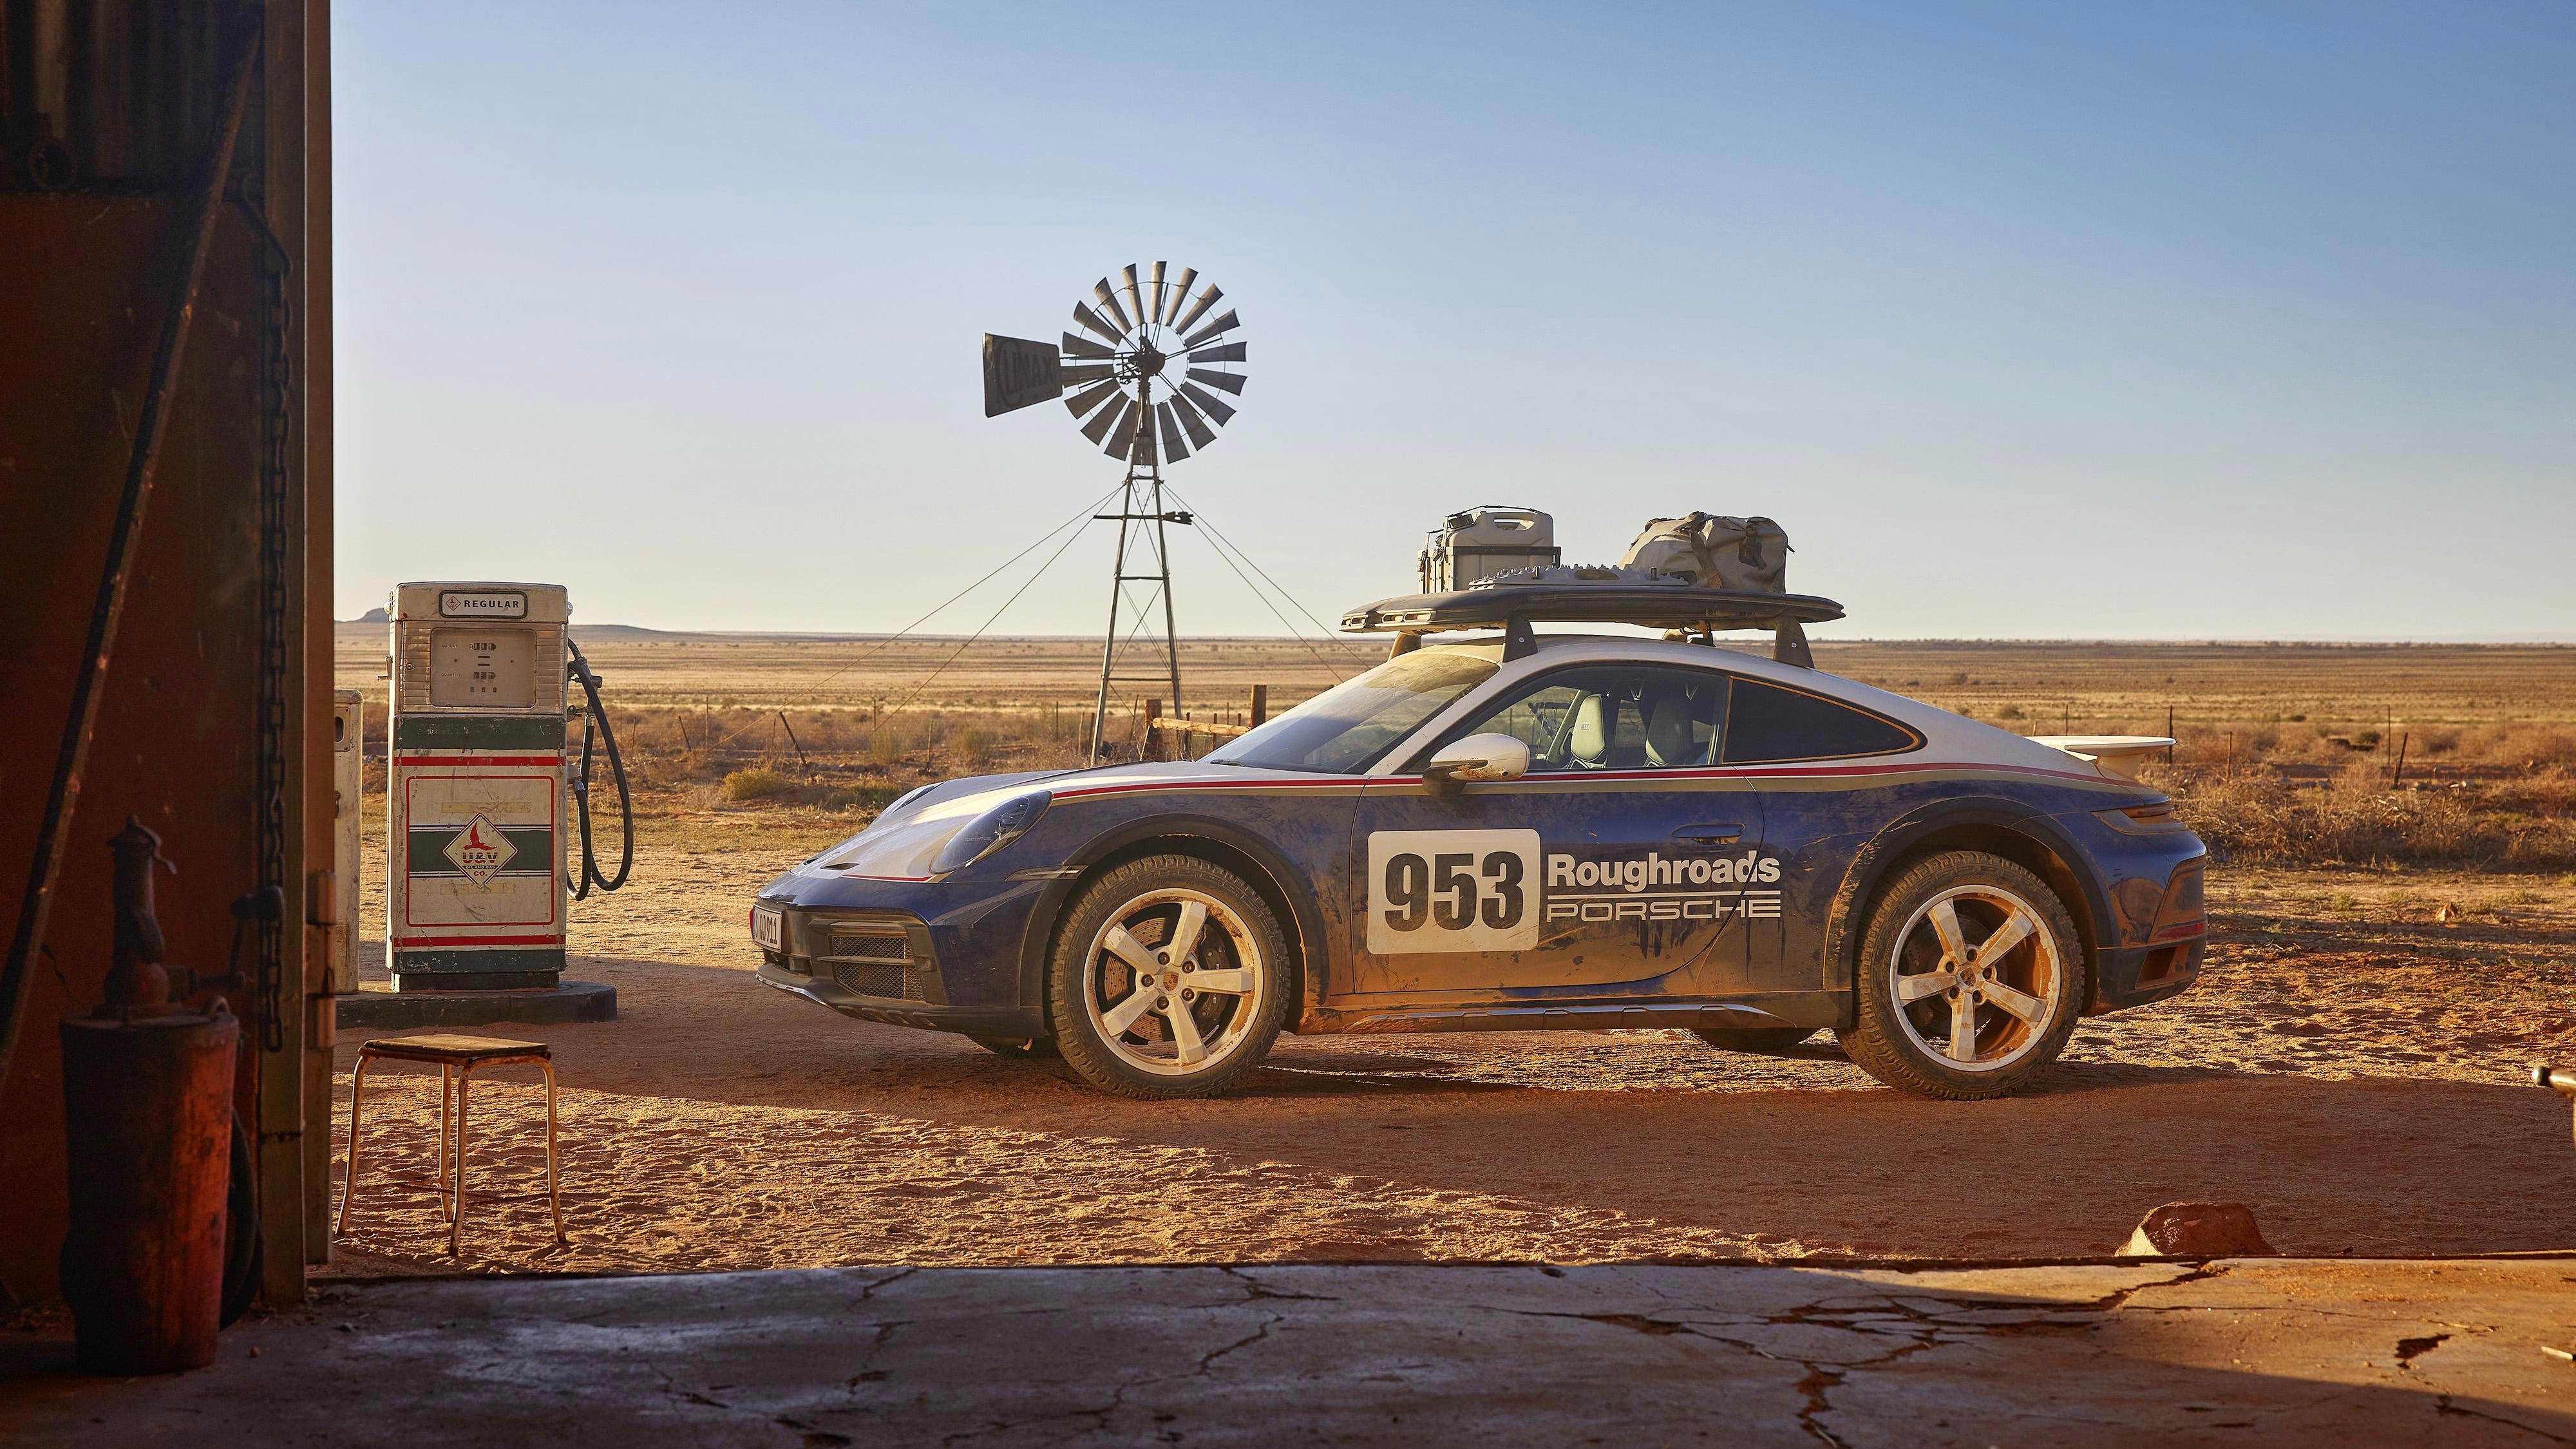 Porsche 911 Dakar at a desert fuel station